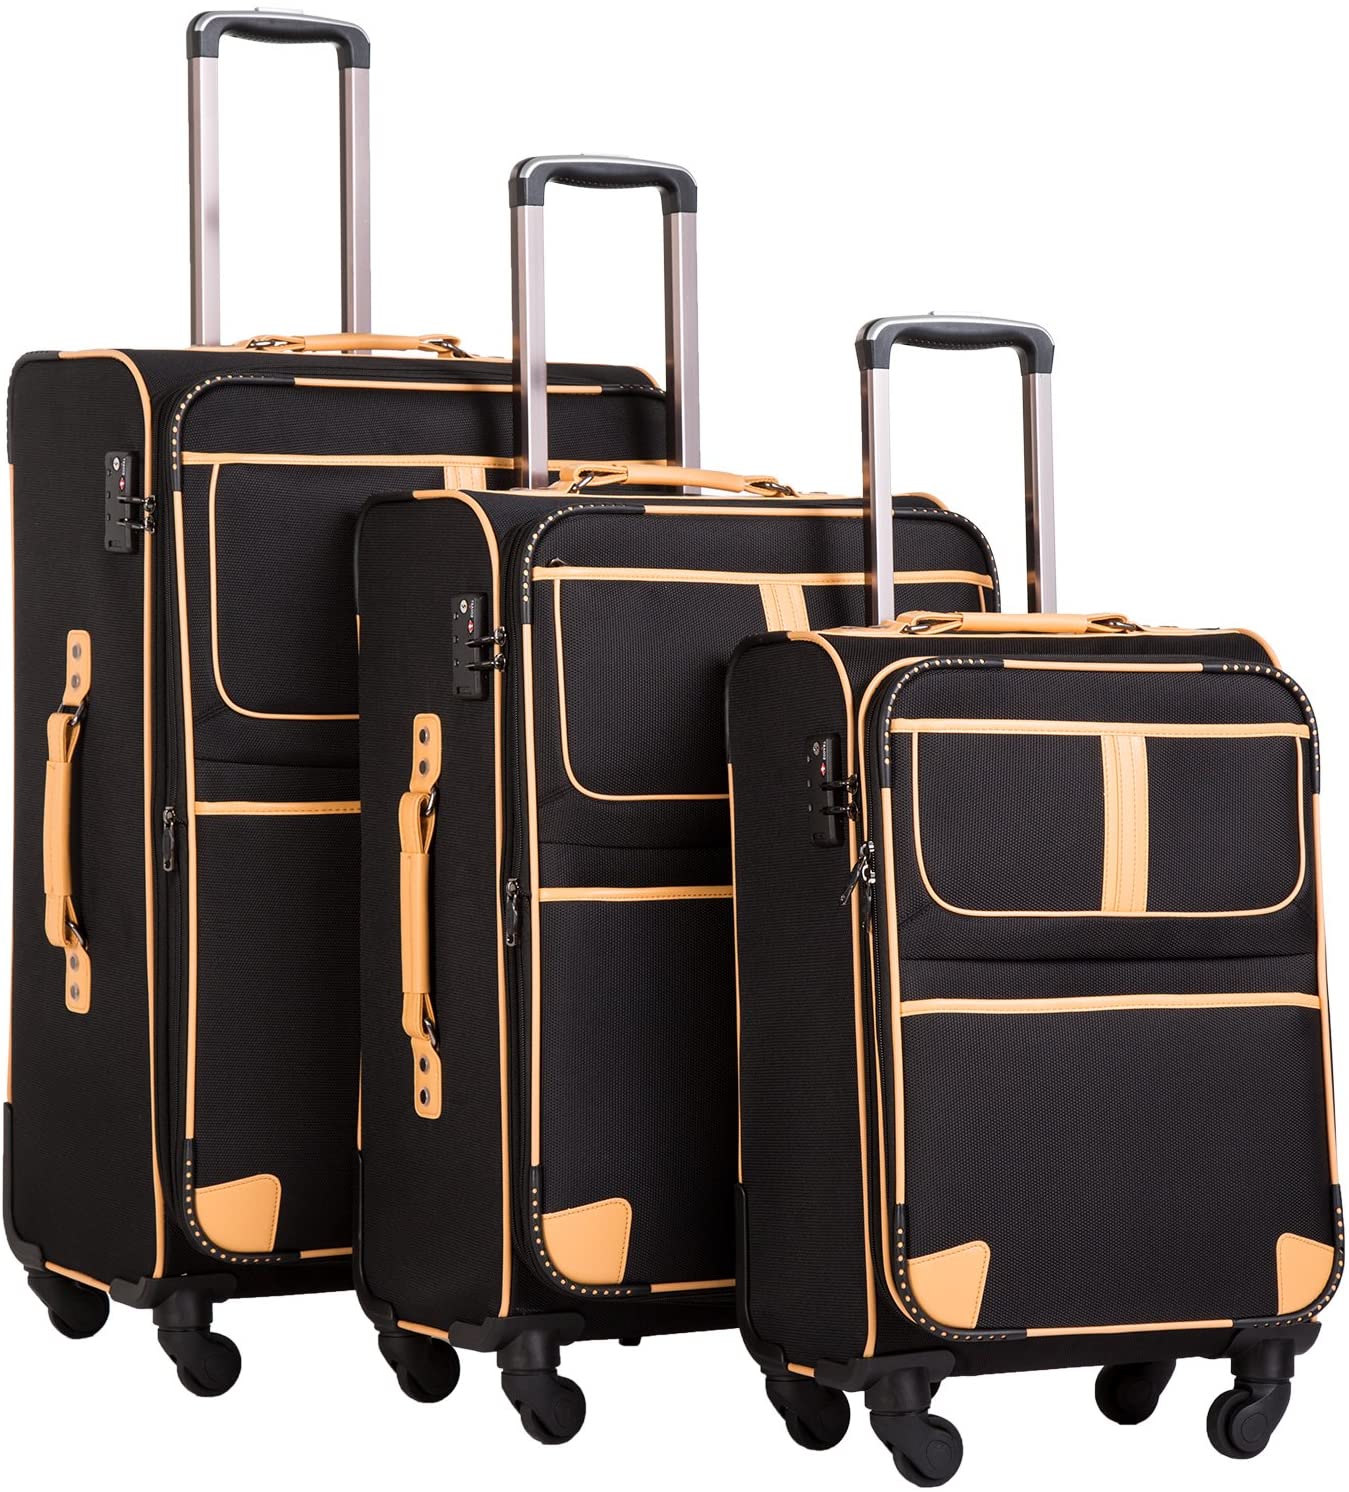 Coolife TSA Lock Soft Shell Suitcase Set, 3-Piece